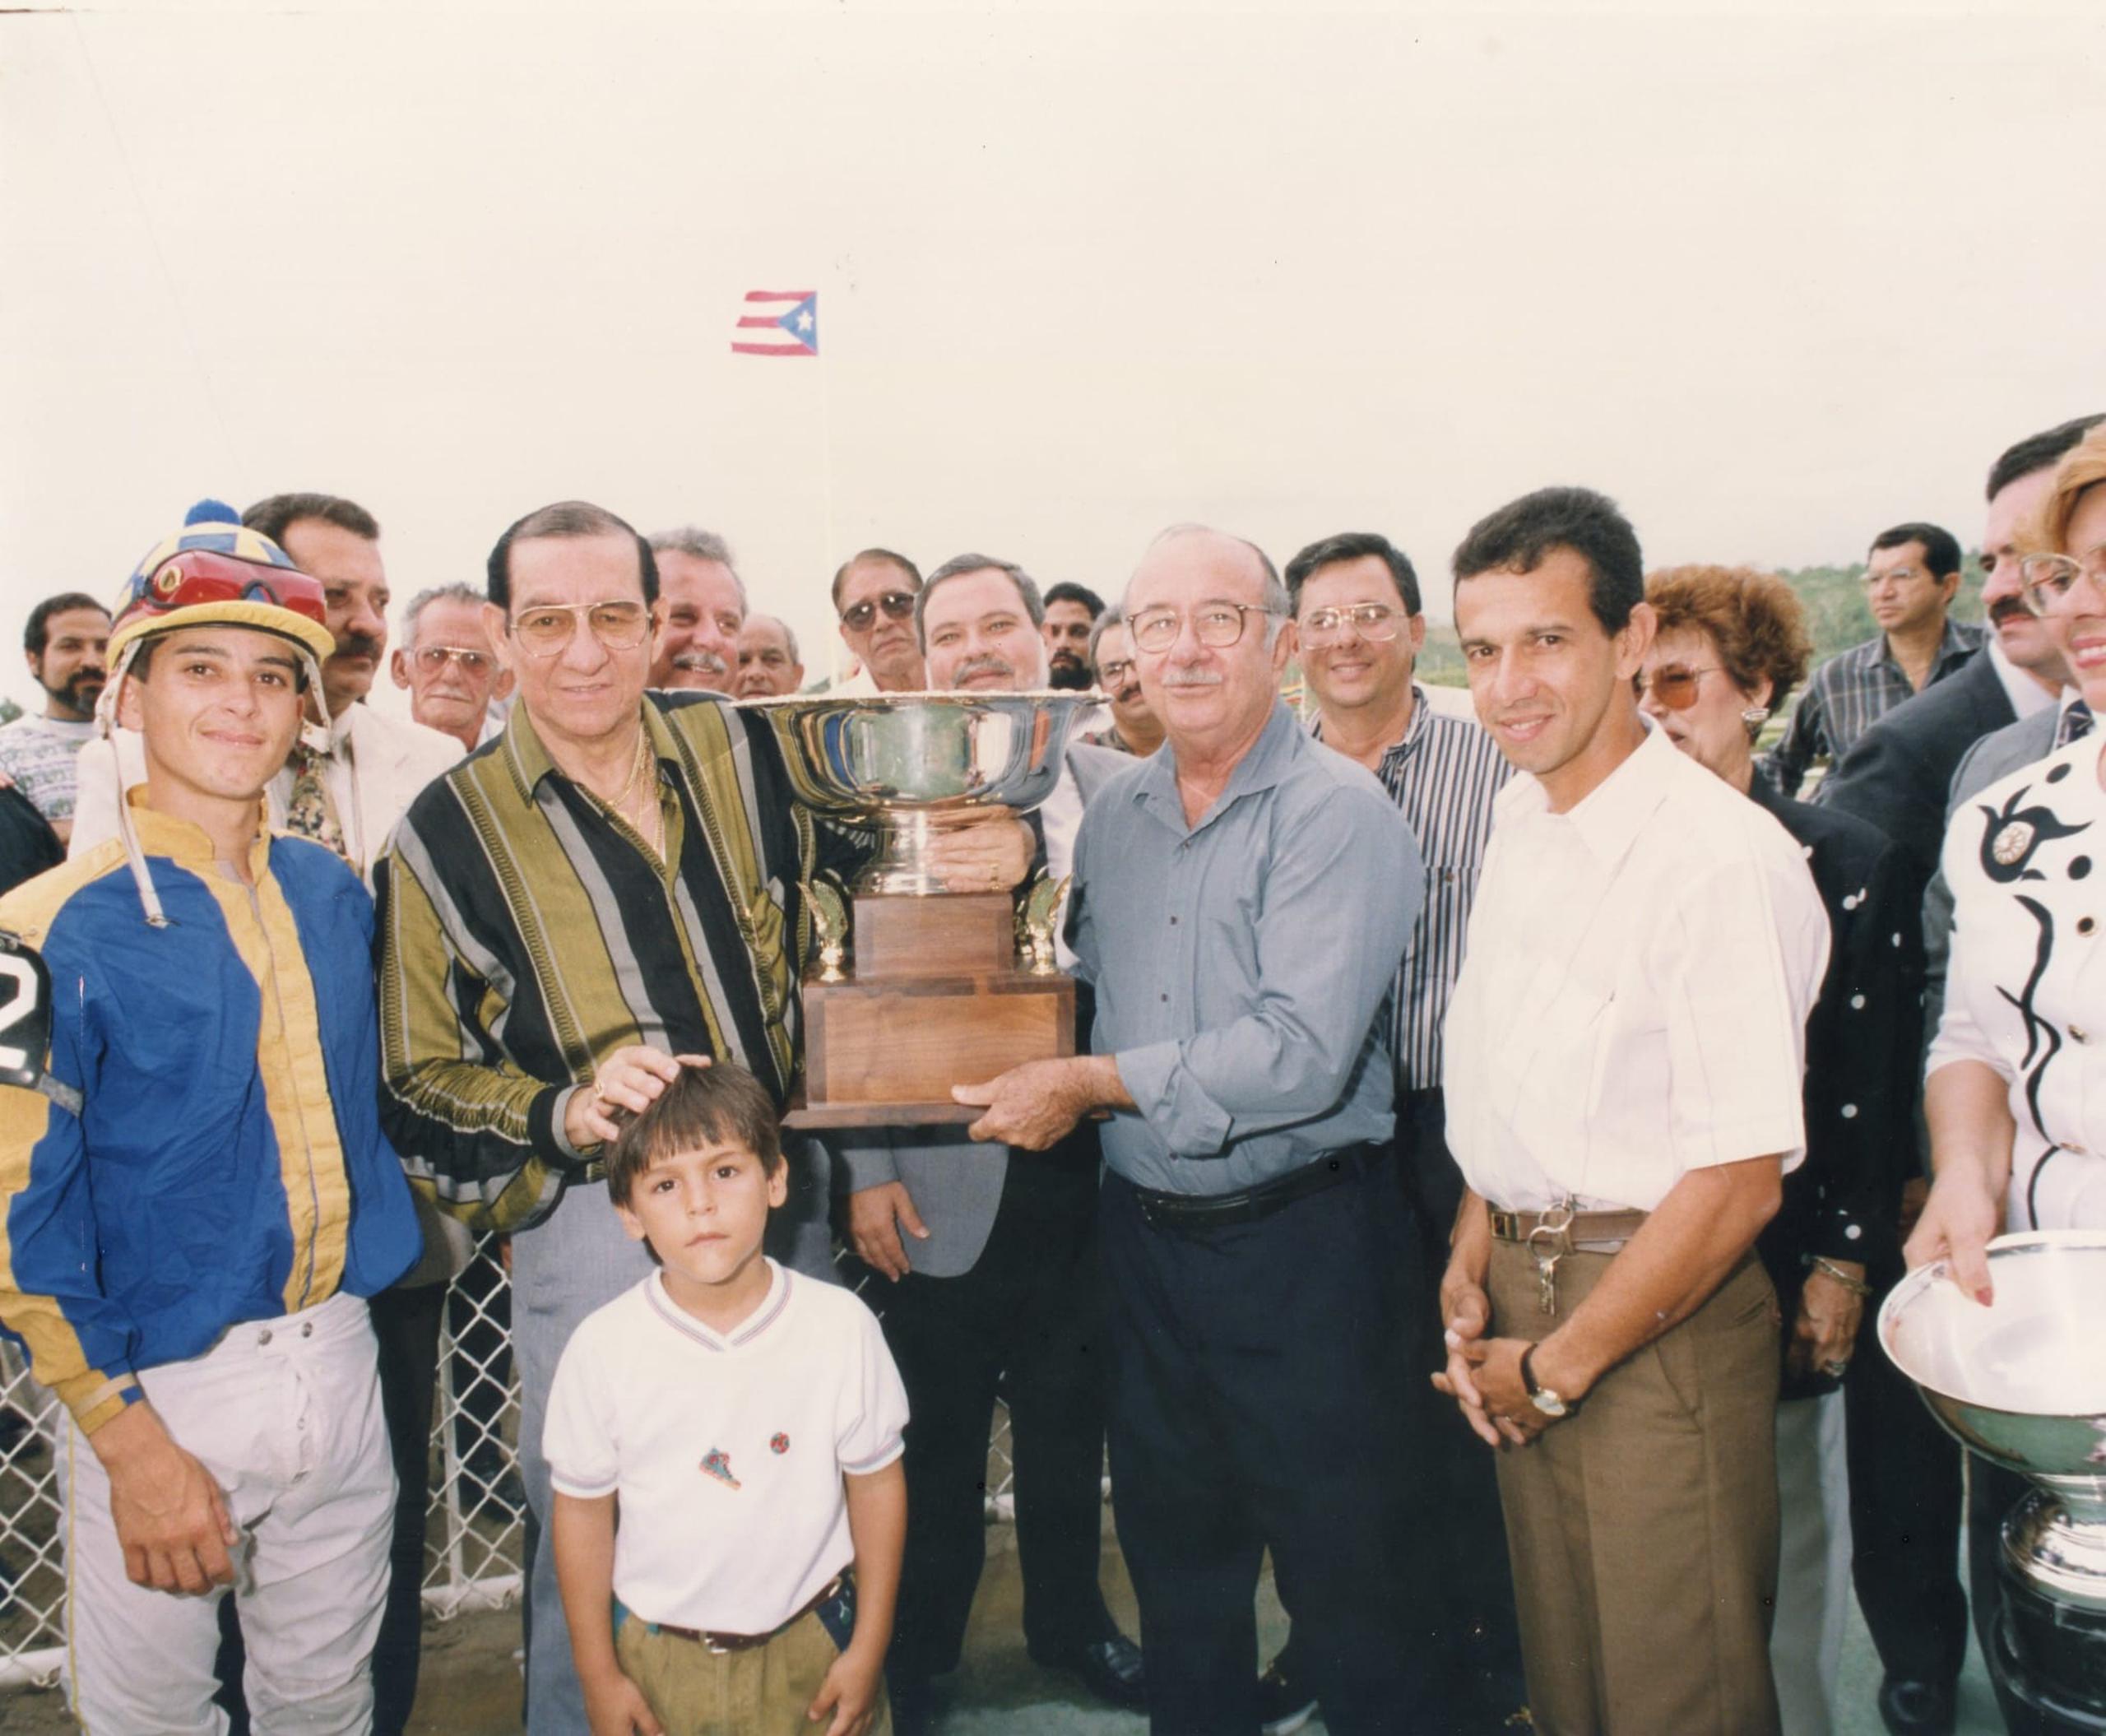 Tommy Muñiz, con camisa gris,  entrega la Copa San Juan a Luis Hernández por su triunfo en el Clásico San Juan del 1991 en el Hipódromo El Comandante. La carrera fue ganada por Vuelve Candy B, con la monta de Alexis Feliciano. En ese evento el caballo completó la conquista de la Triple Corona.